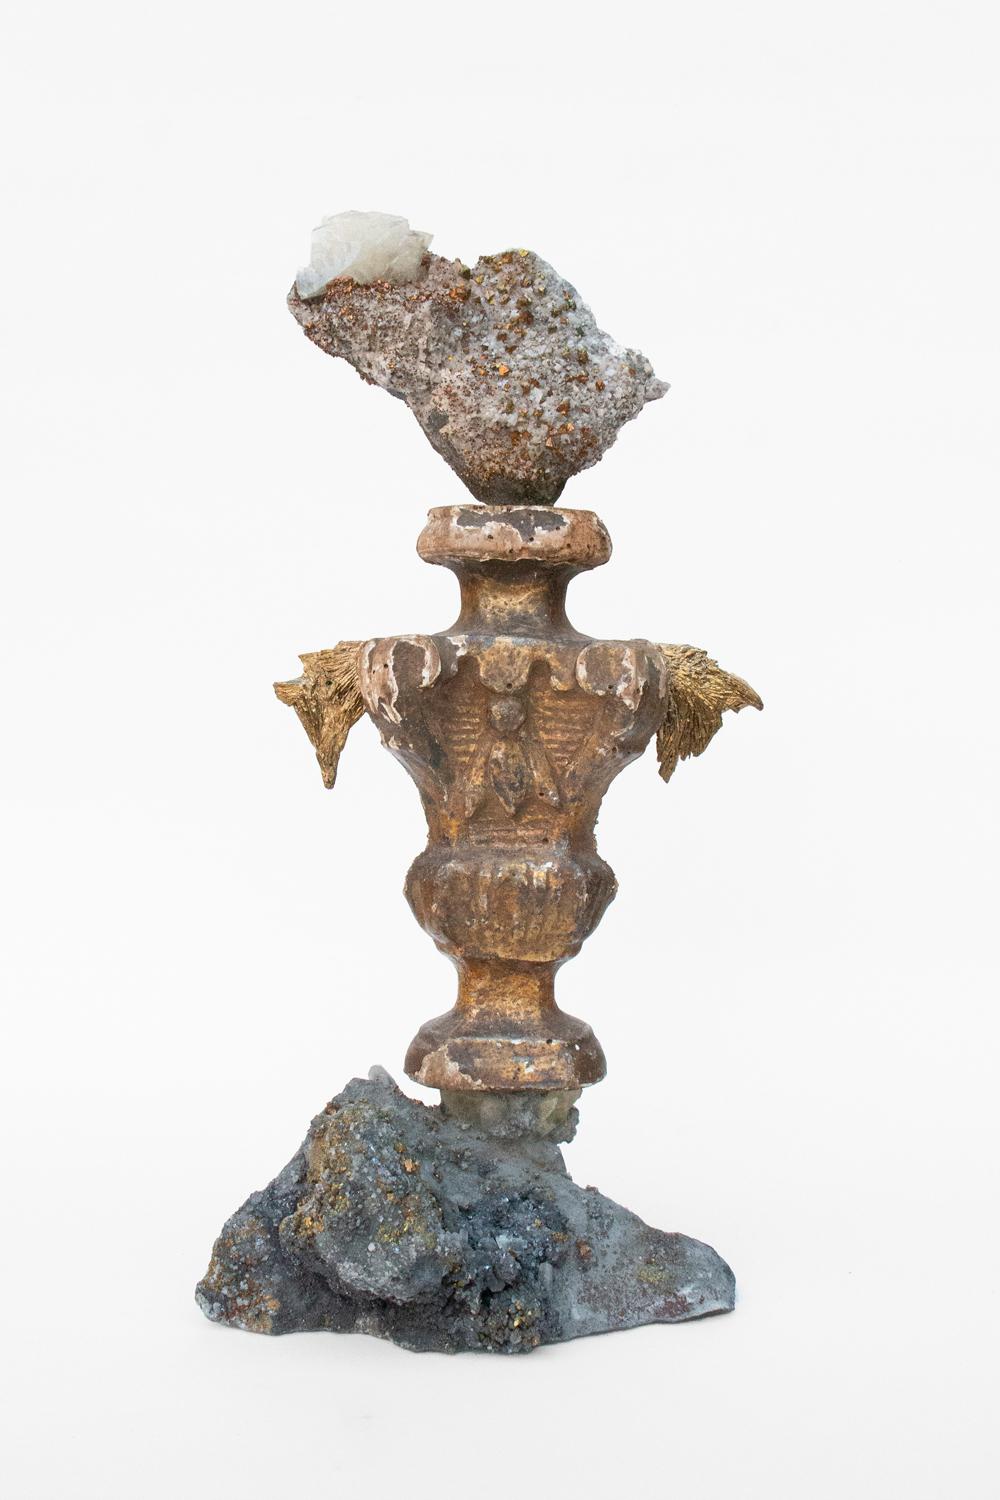 Fragment sculptural italien du 18ème siècle avec chalcopyrite sur une matrice de cristaux druzy avec des cristaux de calcite et du disthène plaqué or.

Ce fragment faisait à l'origine partie d'un chandelier provenant d'une église en Italie. Elle